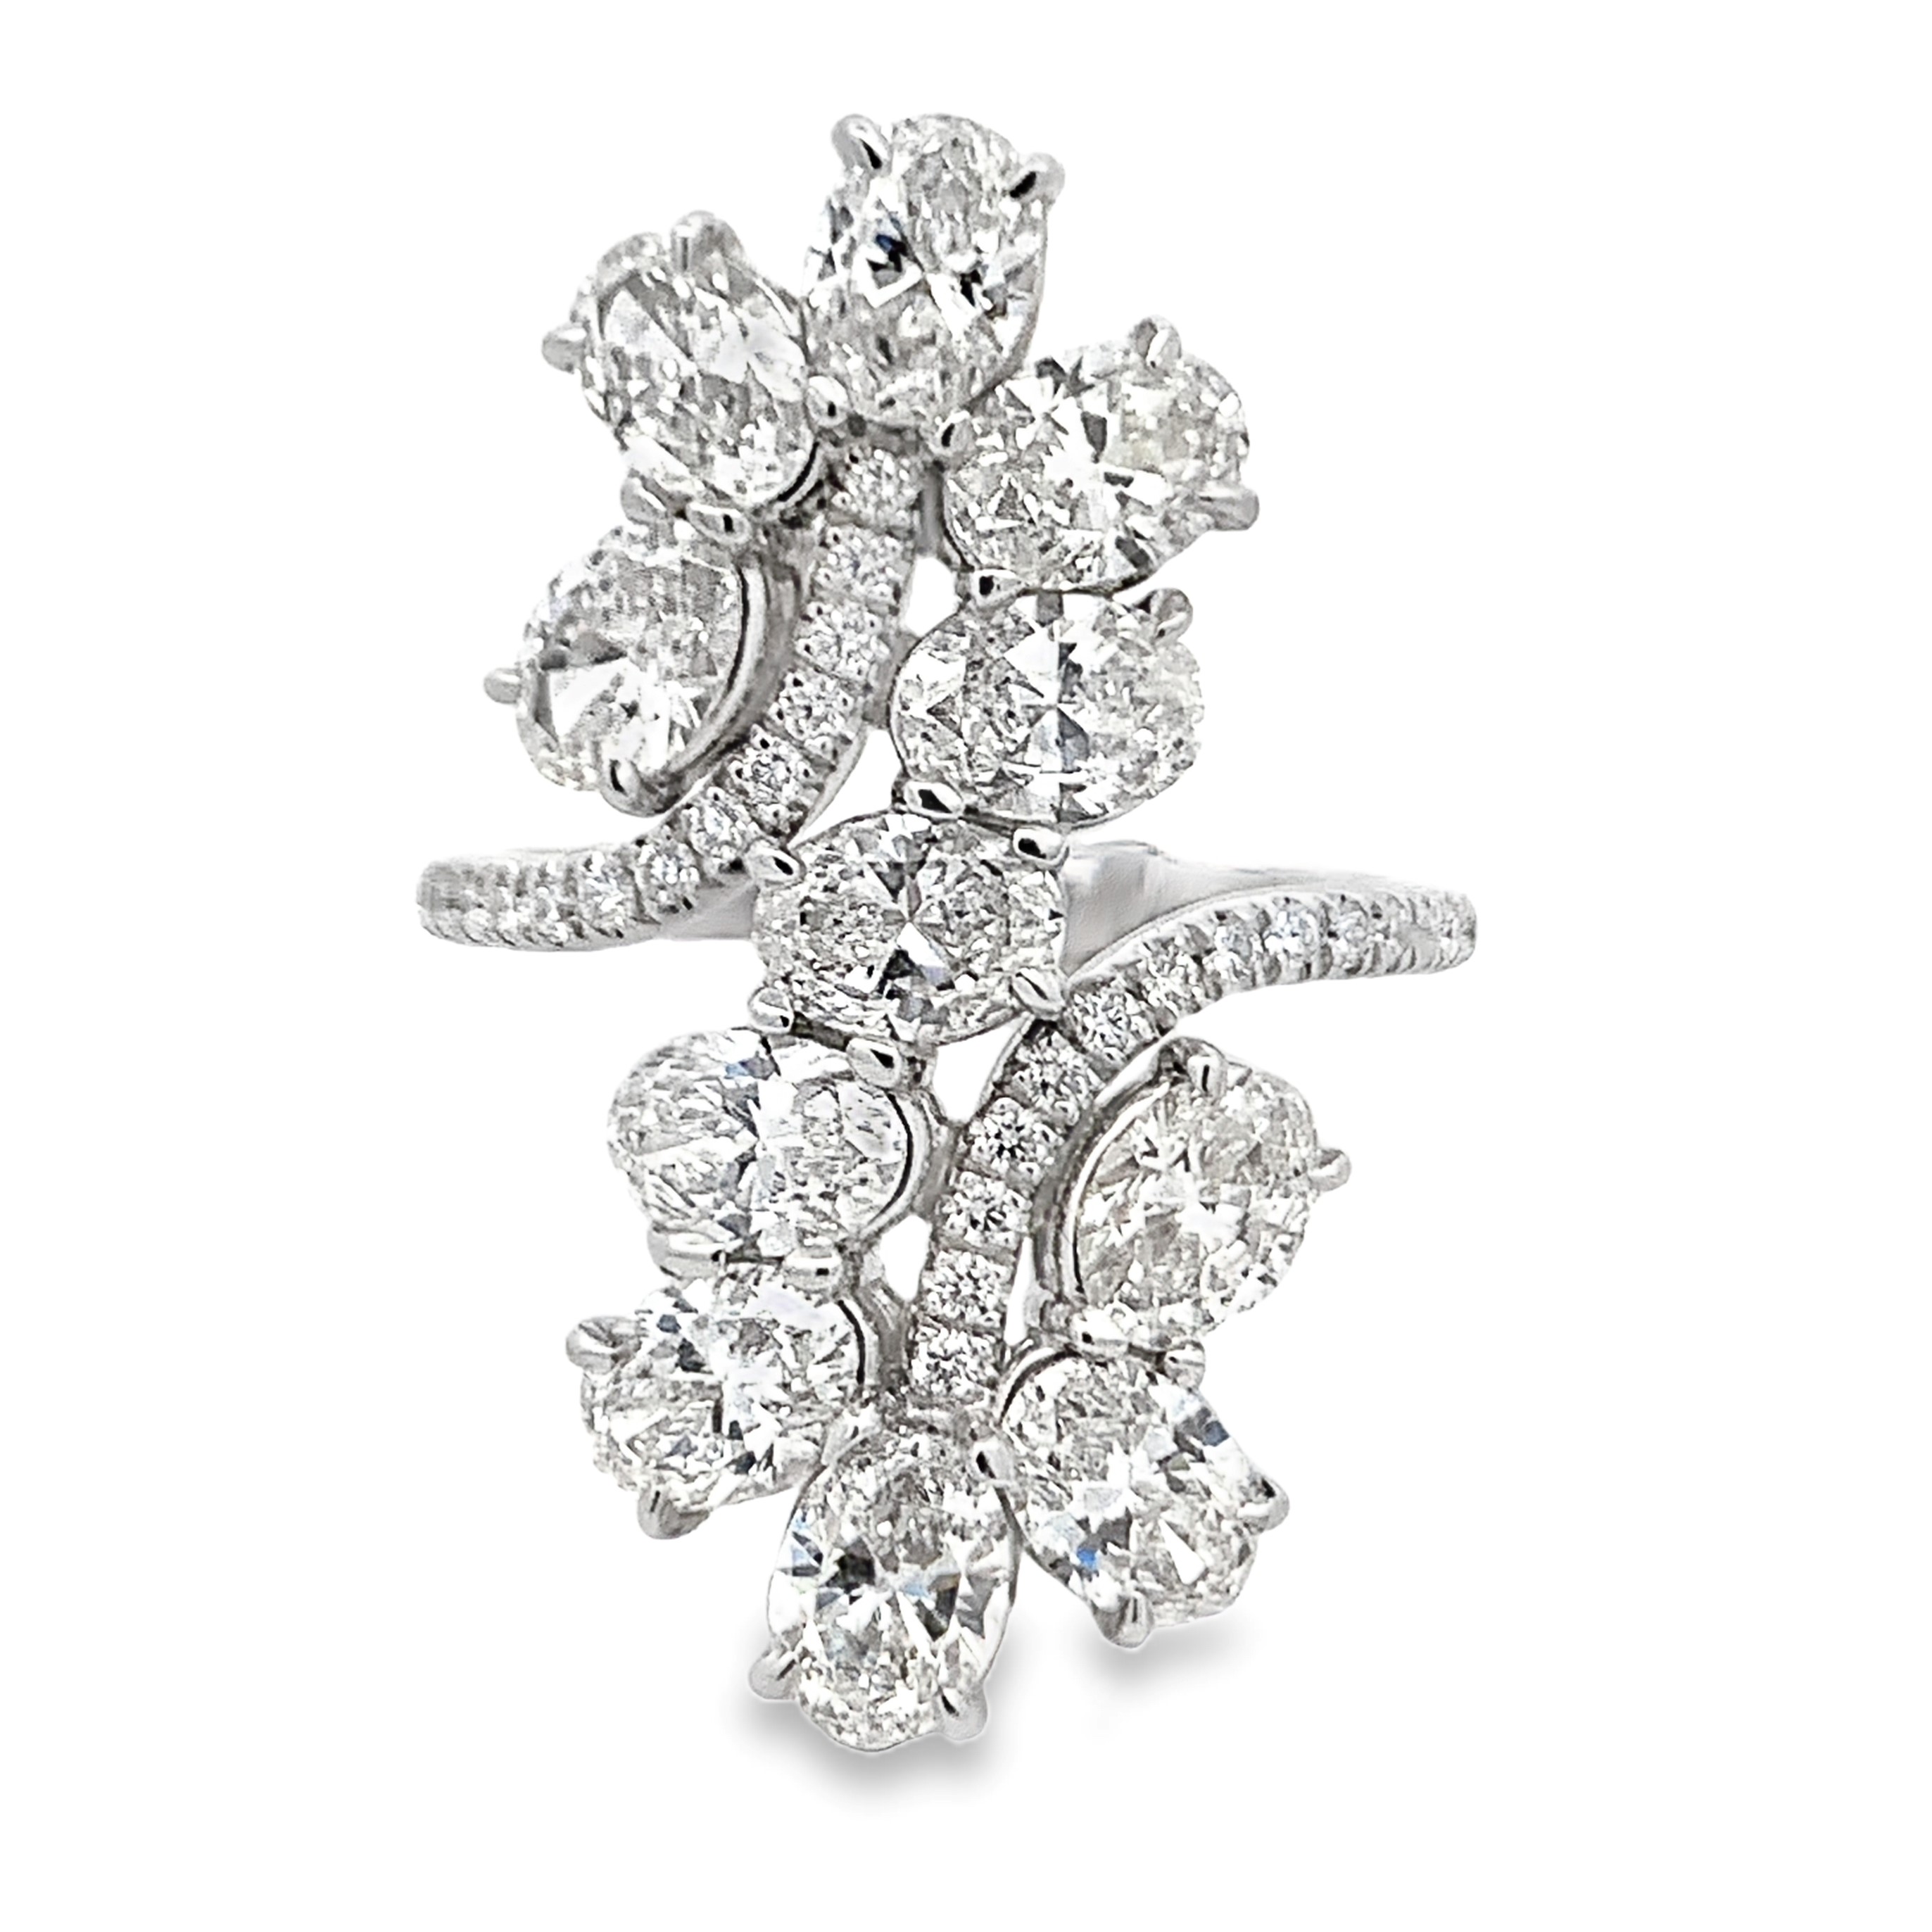 Norman Silverman 18K White Gold Diamond Floral Ring